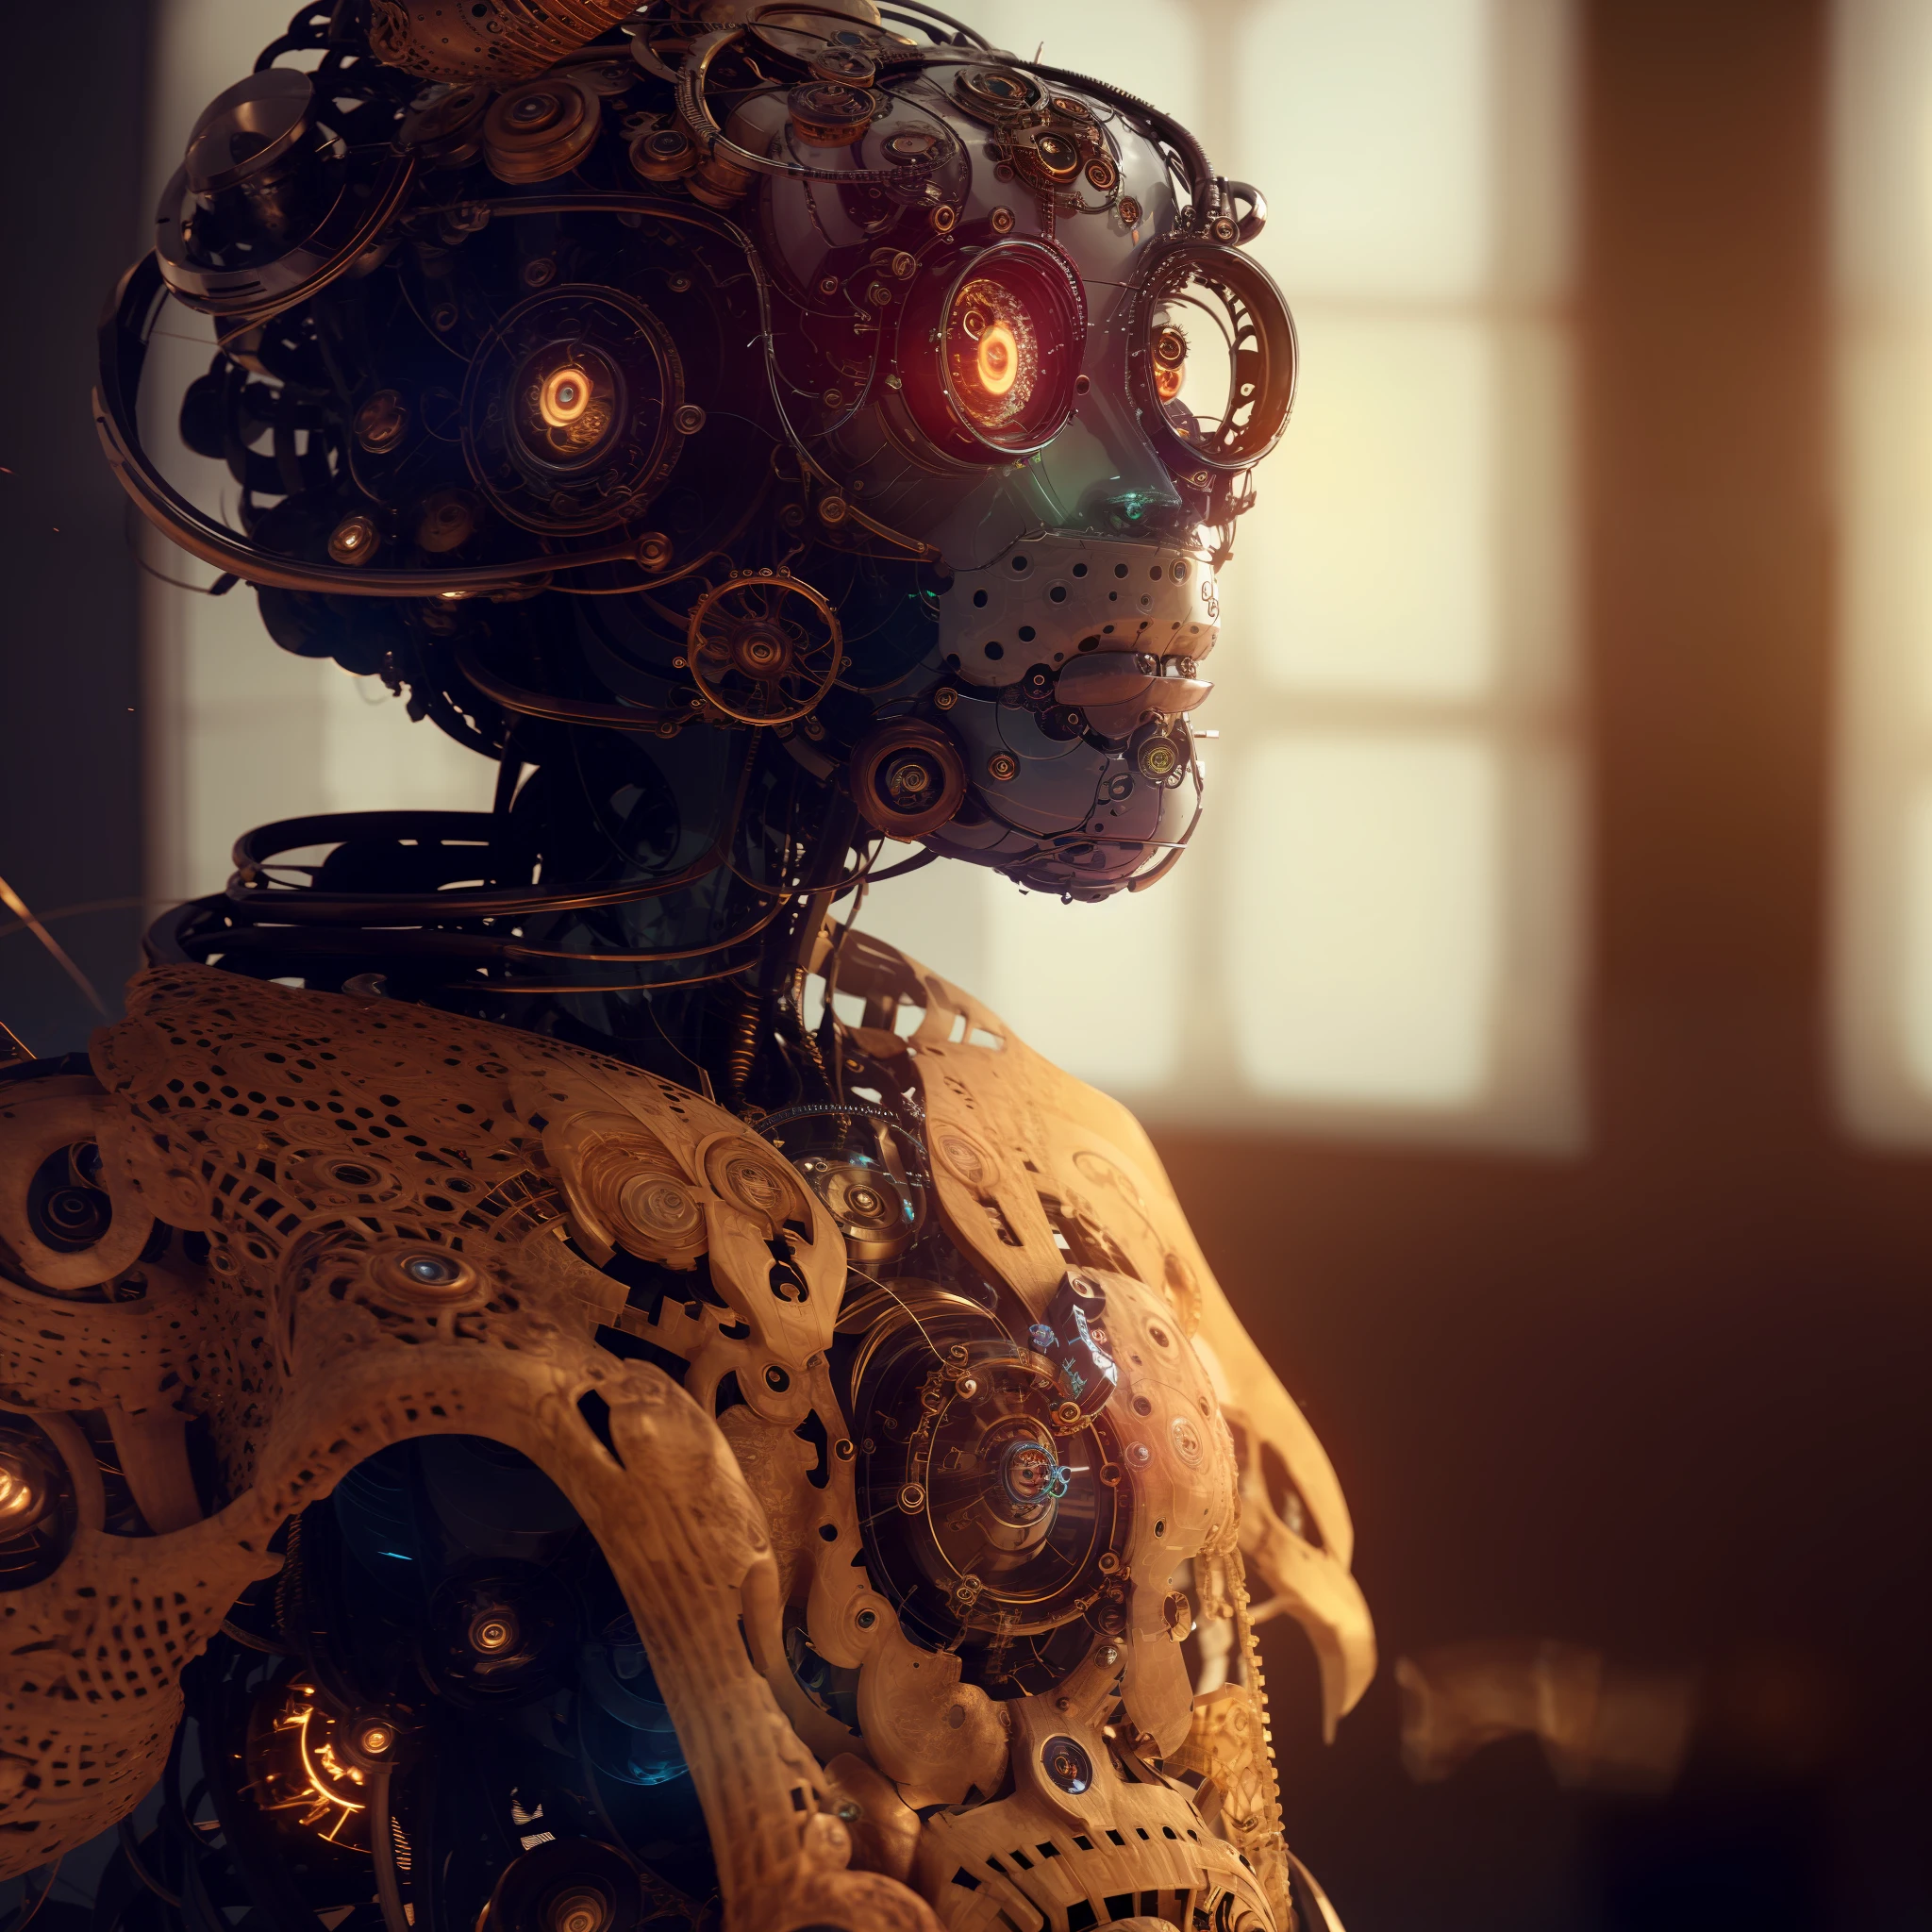 มีหุ่นยนต์หัวใหญ่หน้าใหญ่สวมเสื้อโครเชต์สีเบจ, Cyber steampunk 8 k 3 d, การเรนเดอร์ 8K ที่ซับซ้อน, หุ่นยนต์สตีมพังค์, หุ่นยนต์สตีมพังค์, แฟชั่น cyberpunk mechanoid, รายละเอียดคล้ายมนุษย์, เรนเดอร์อาร์ตนูโวออกเทน, ศิลปะที่ซับซ้อน. การเรนเดอร์ค่าออกเทน, Cyber steampunk, beautiful การเรนเดอร์ค่าออกเทน, ไซบอร์กที่ซับซ้อน, ศิลปะดิจิตอลสตีมพังค์, 8k การเรนเดอร์ค่าออกเทน fantasy style, สุนทรียศาสตร์แบบสตีมพังค์, แฟชั่น photography, แฟชั่น